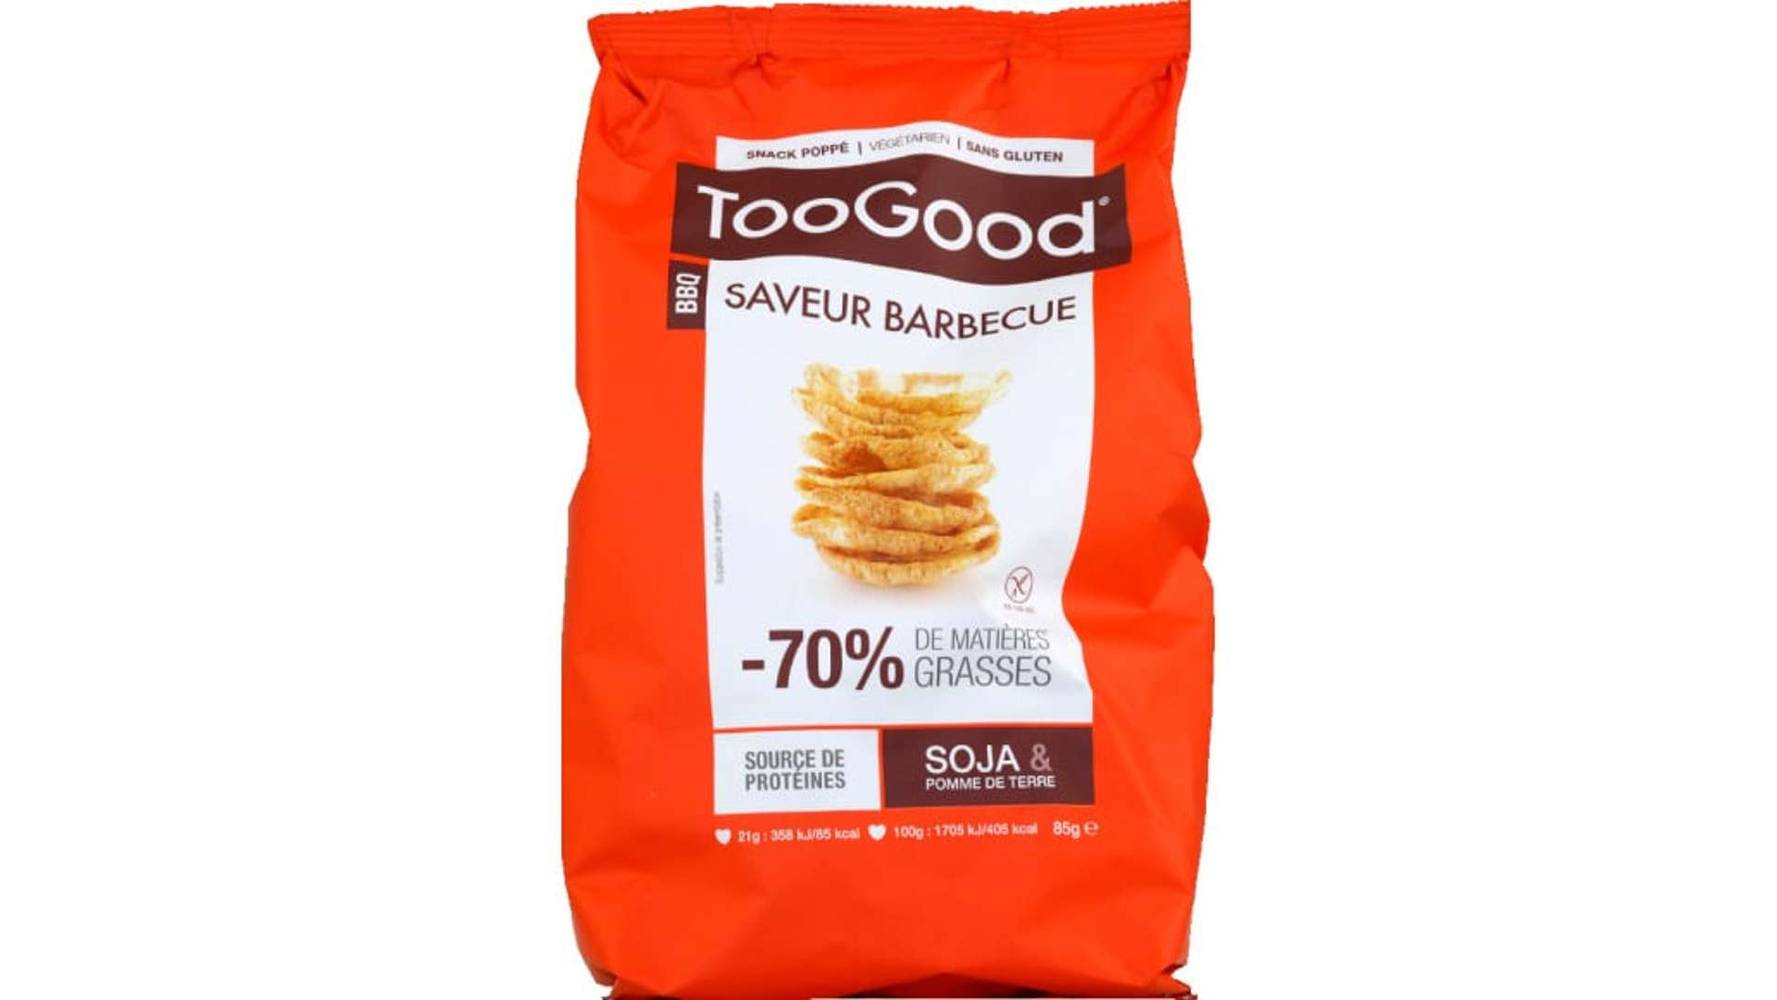 TooGood Snack soufflé à base de soja & pomme de terre, saveur barbecue Le sachet de 85g